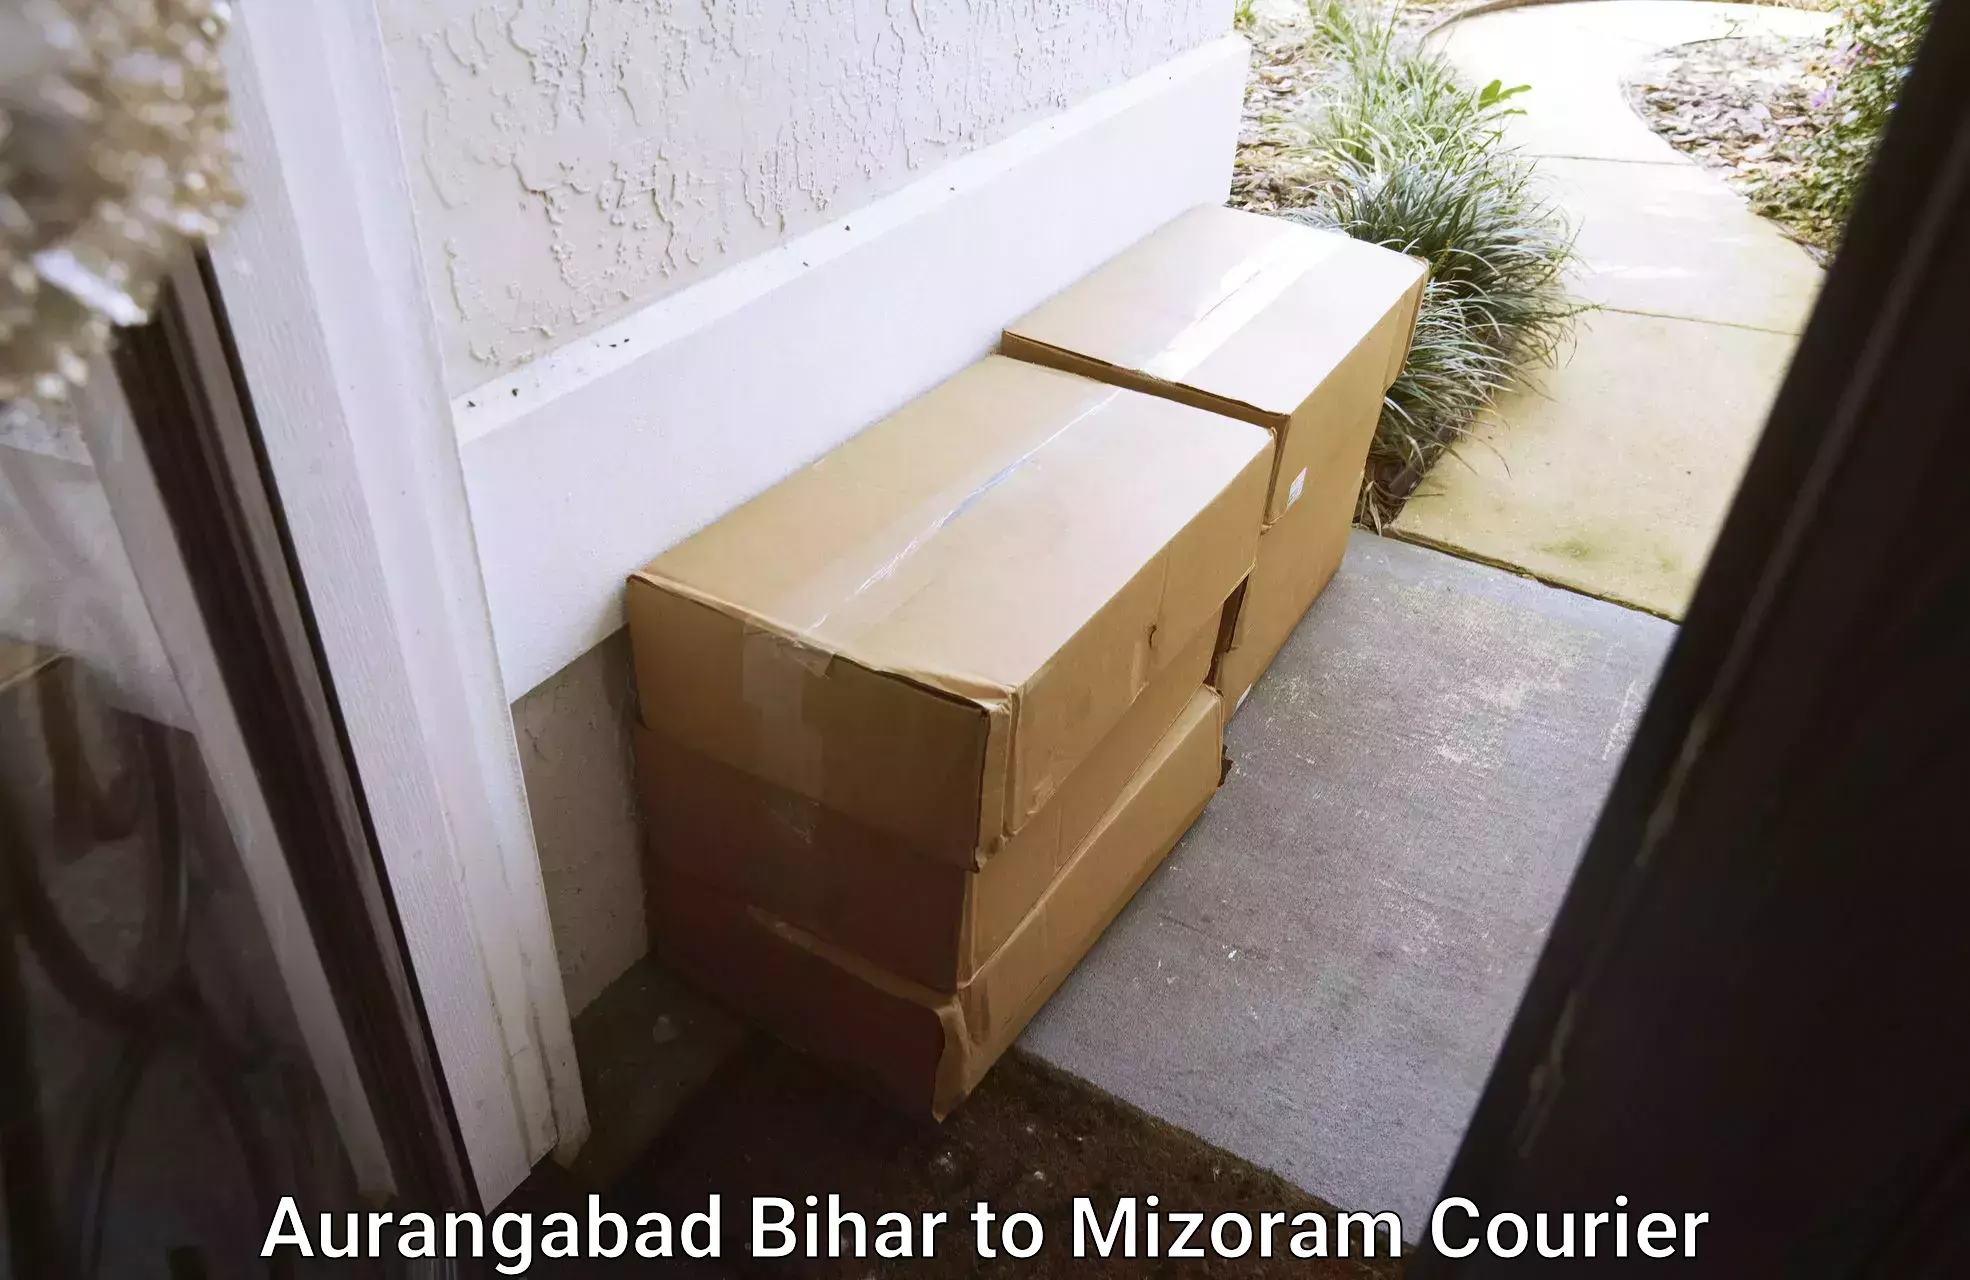 Door-to-door relocation services Aurangabad Bihar to Saitual